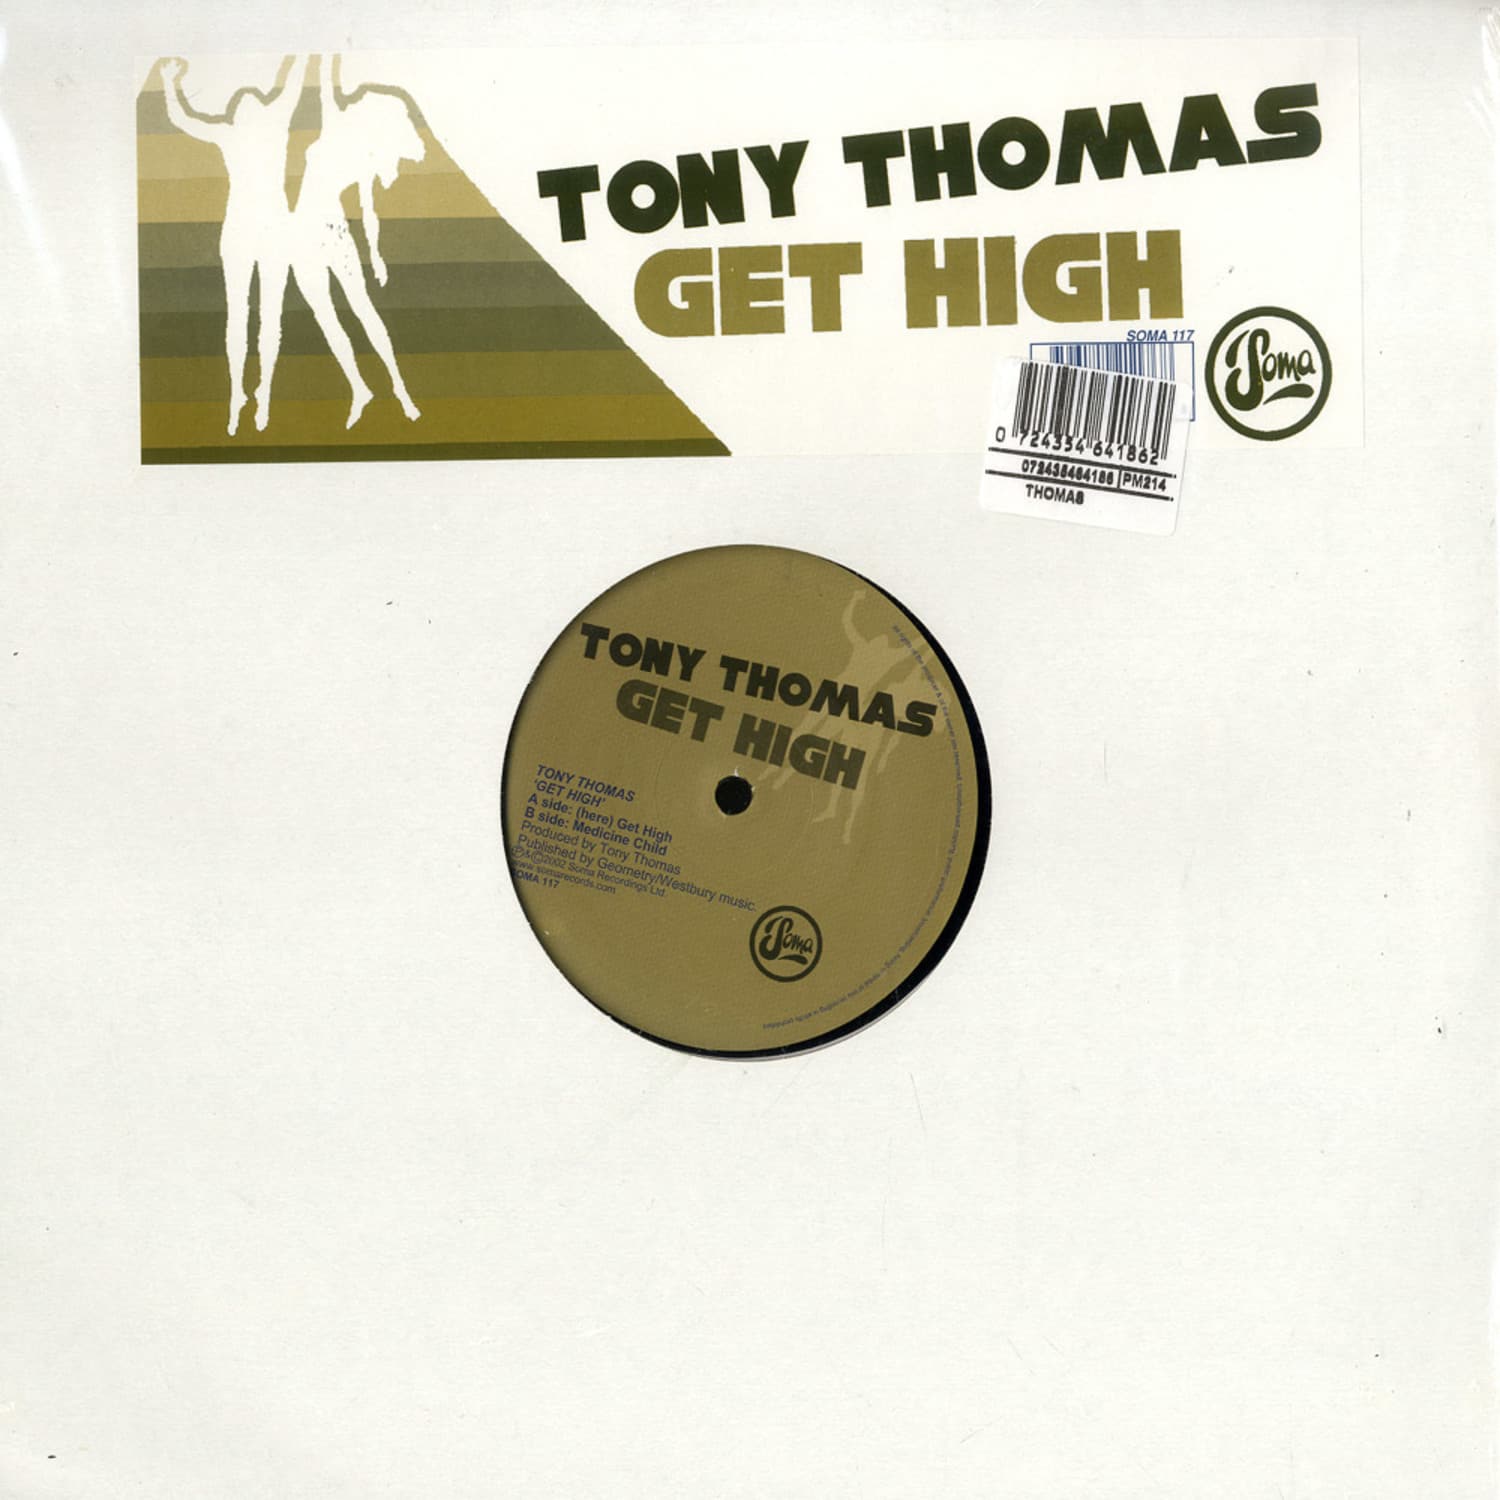 Tony Thomas - GET HIGH